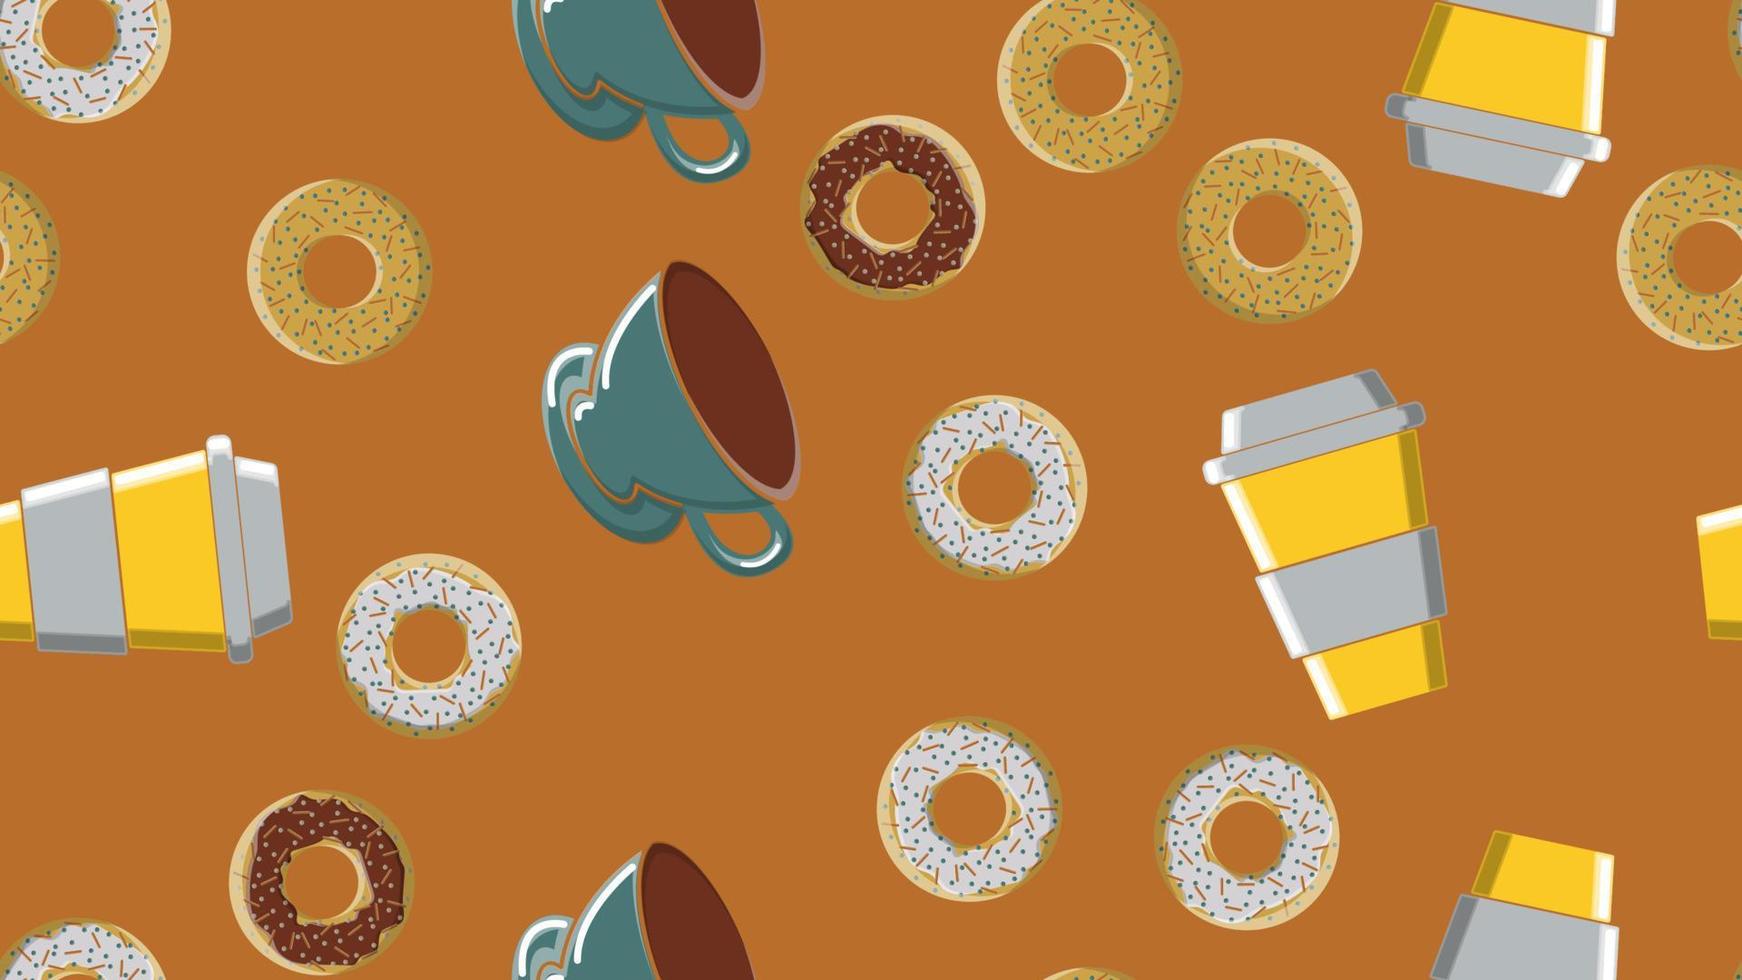 sömlös mönster, textur av annorlunda runda ljuv gott munkar av varm sugary kola choklad och en kopp av varm snabbt stark morgon- kaffe för frukost på en brun bakgrund. vektor illustration